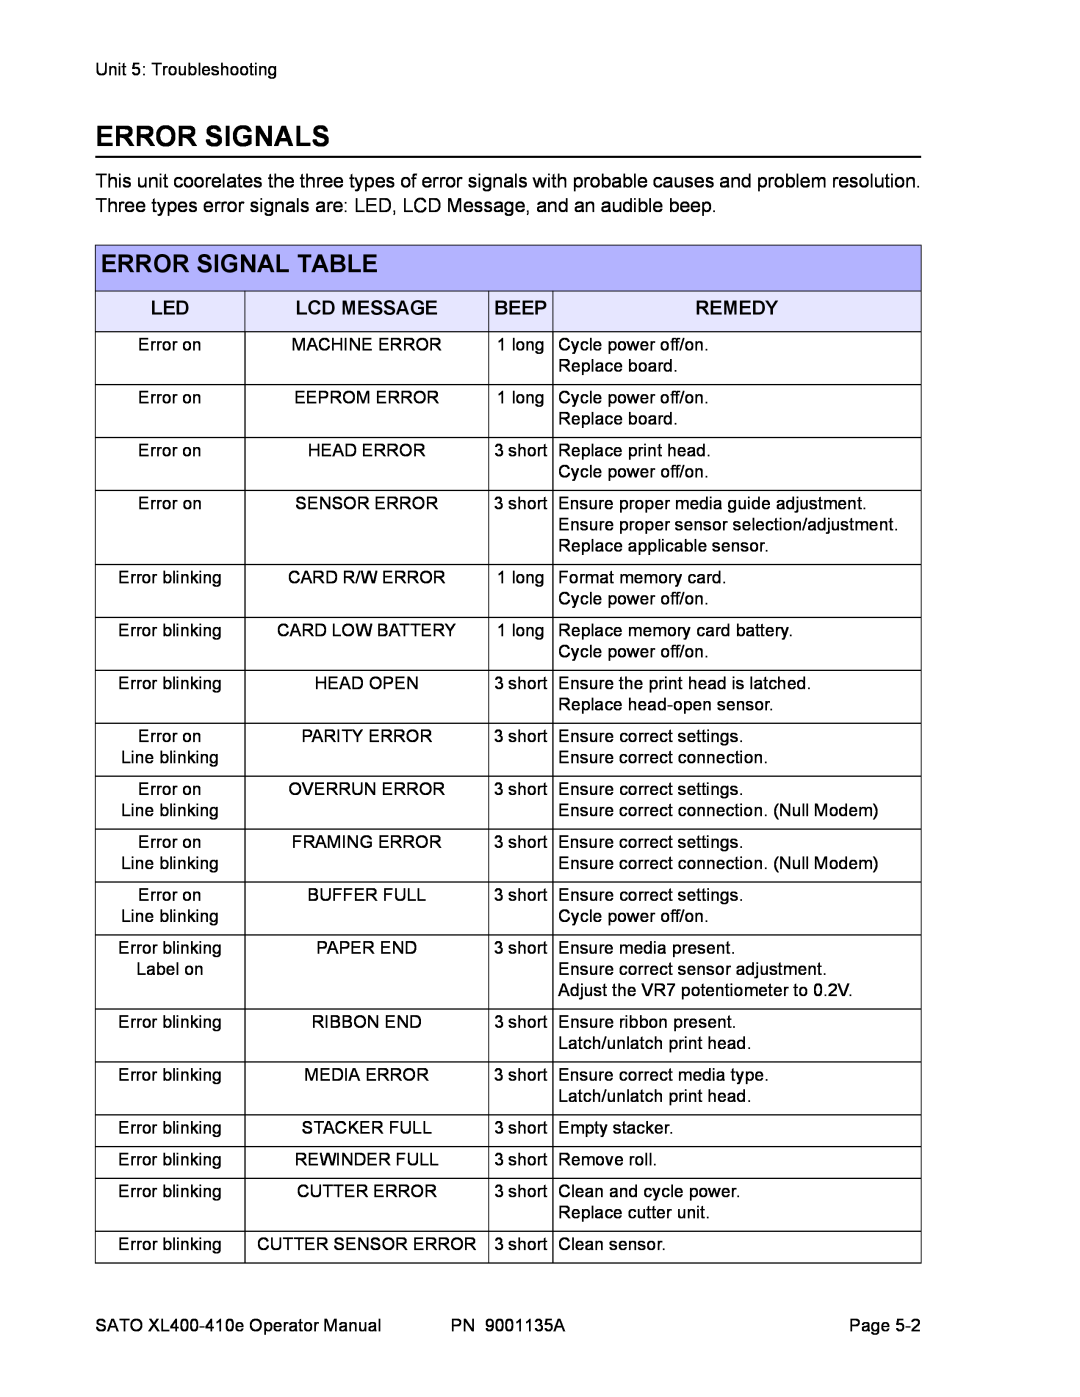 SATO 410e, 400e manual Error Signals, Error Signal Table 